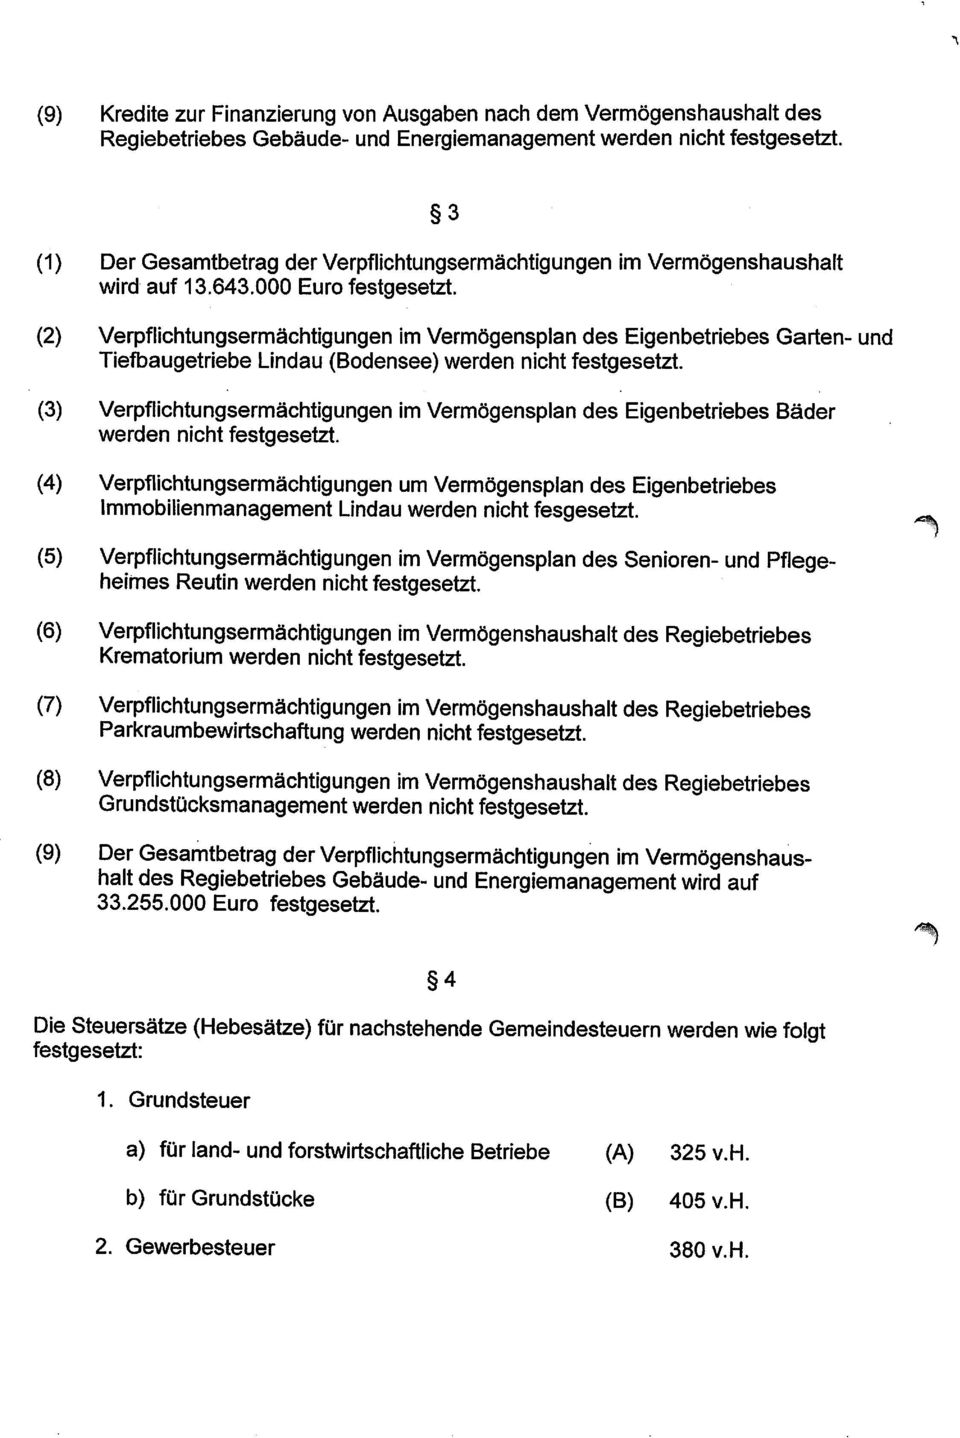 (2) Verpflichtungsermächtigungen im Vermögensplan des Eigenbetriebes Garten- und Tiefbaugetriebe Lindau (Bodensee) werden nicht festgesetzt.